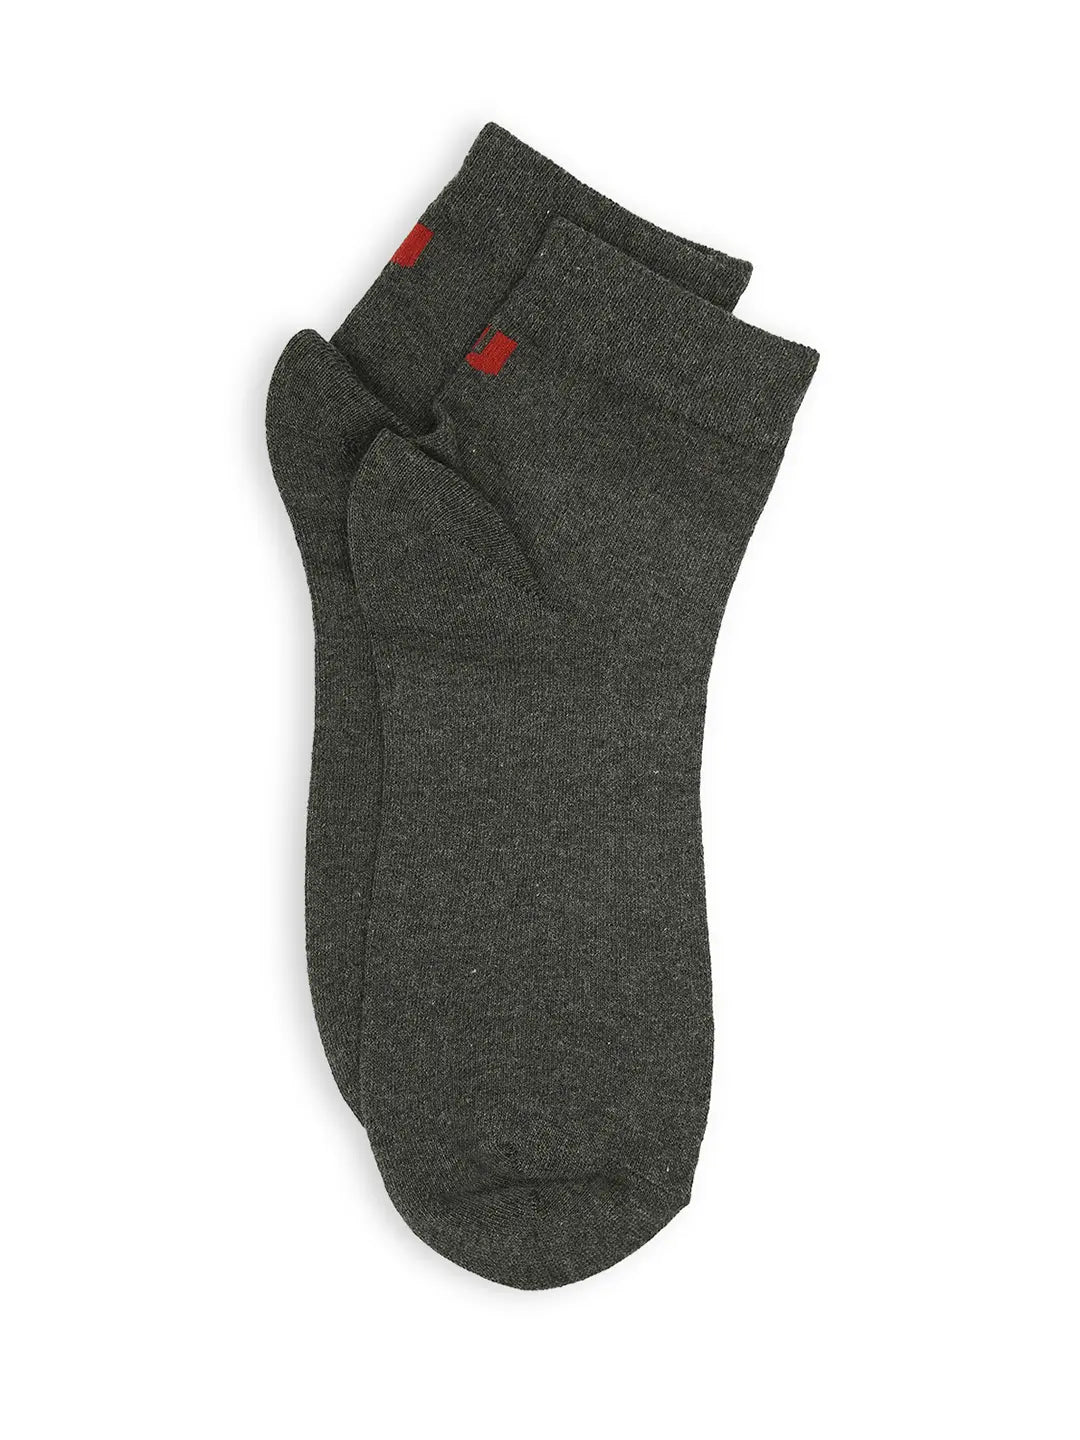 Men Premium White & Anthra Melange Ankle Length Socks - Pack Of 2- Underjeans by Spykar